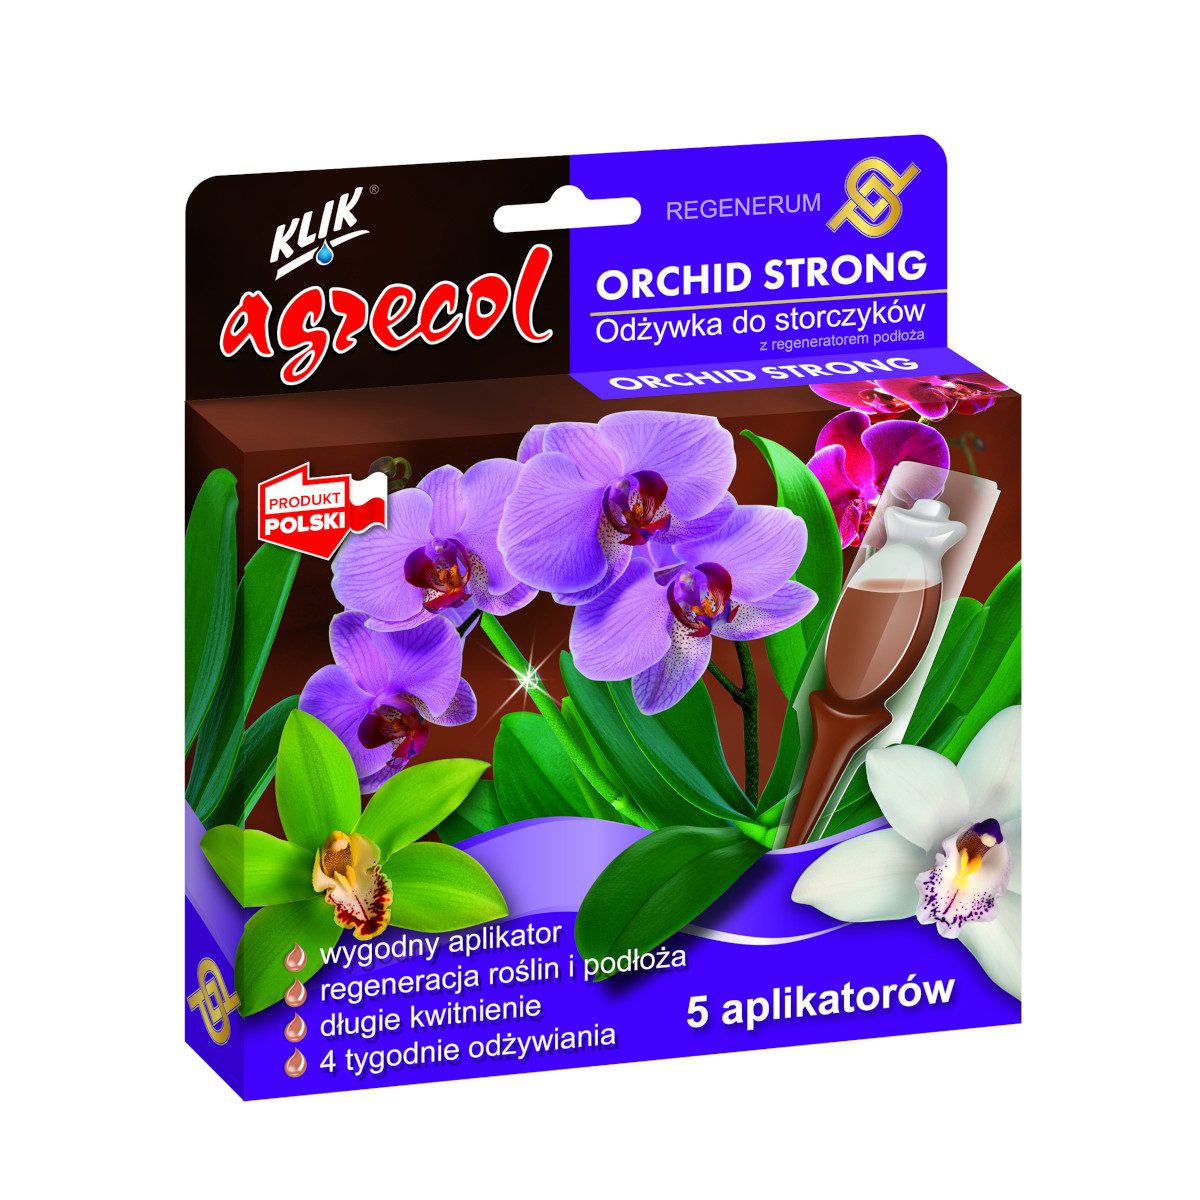 Agrecol Orchid Strong Regenerum odżywka do storczyków z regeneratorem podłoża 5x30ml